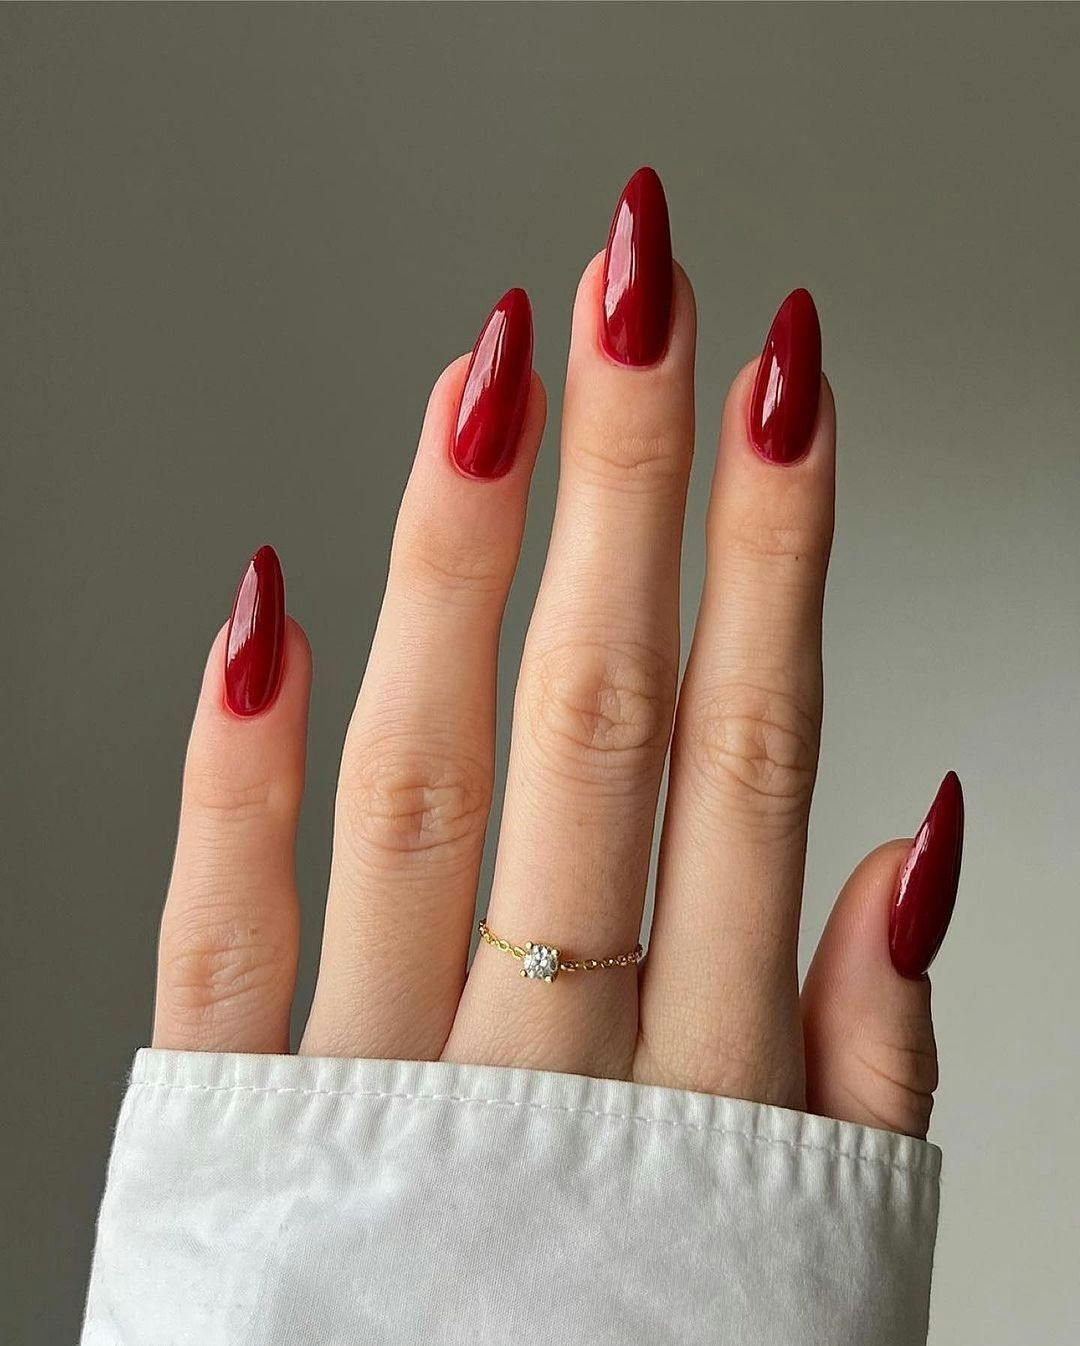 nail designs classy cute simple | Nails, Chic nails, Stylish nails